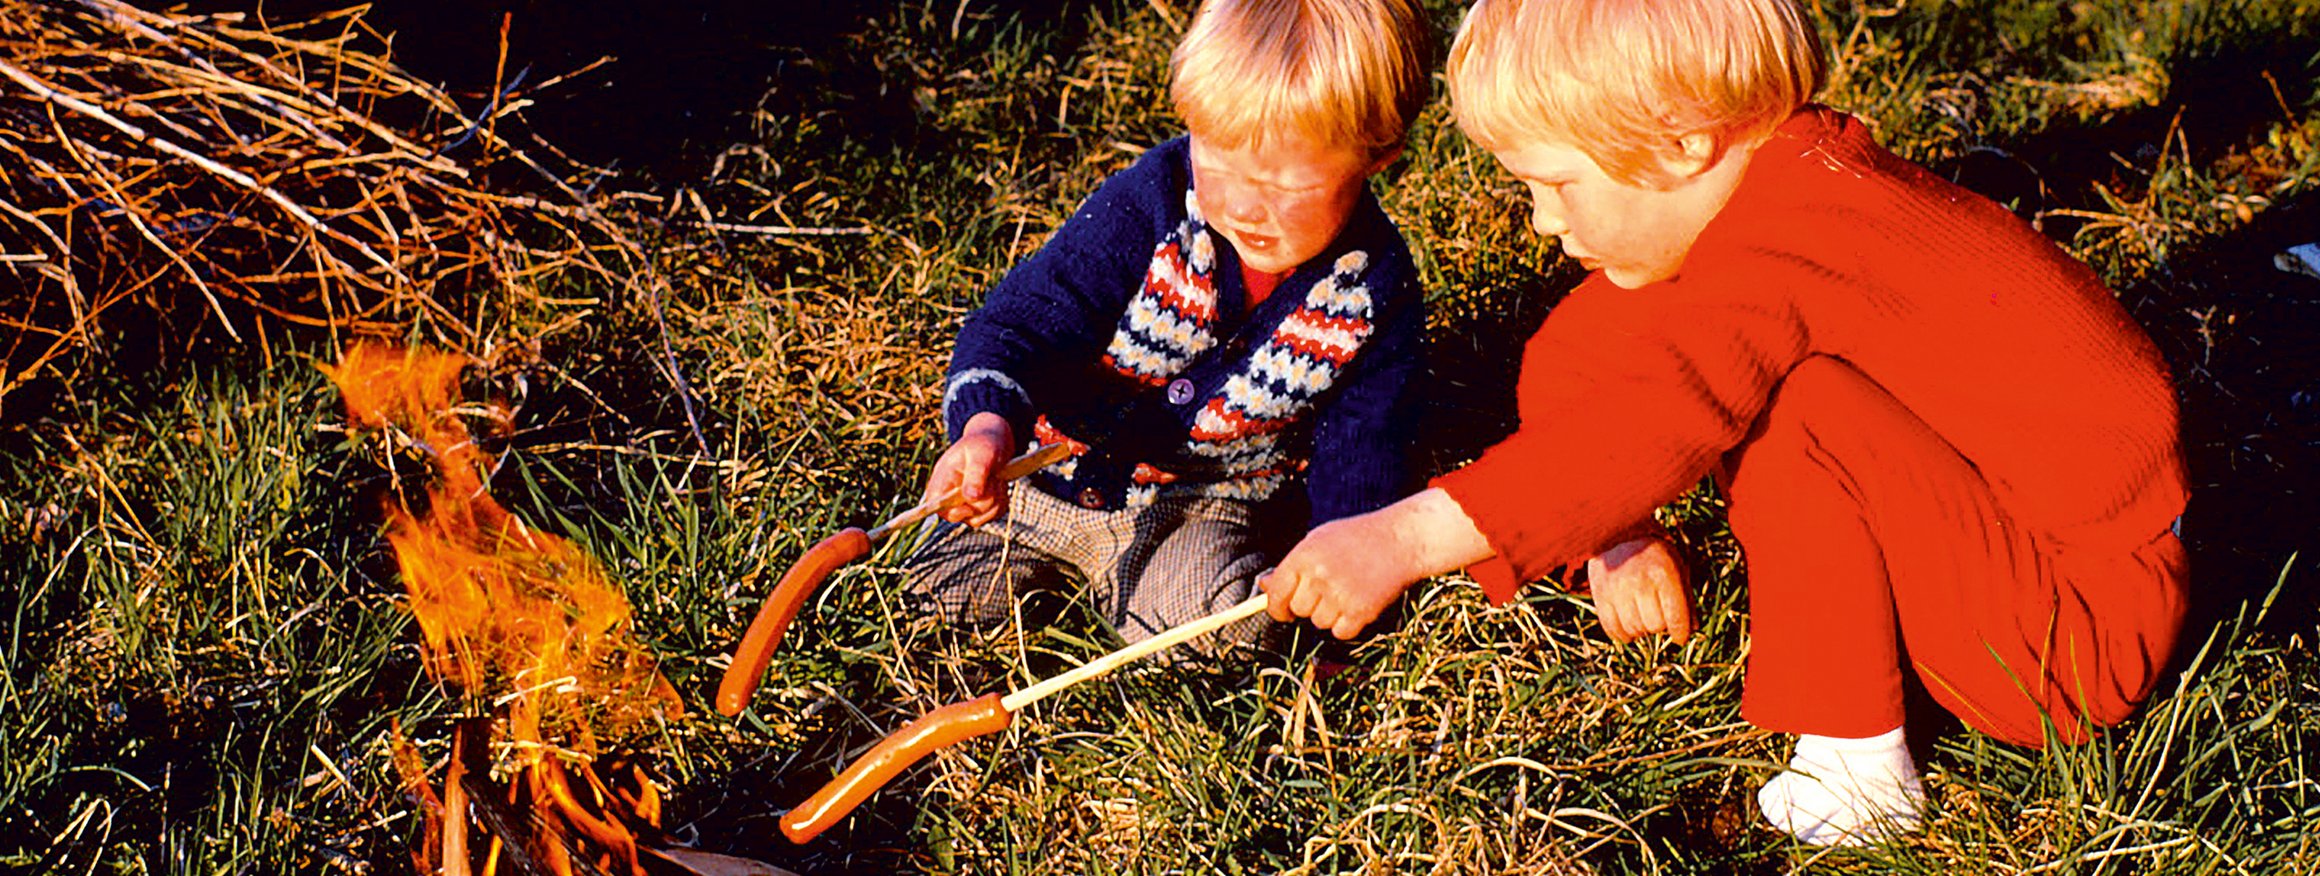 Ein älteres Foto zeigt zwei blonde Kinder auf einer Wiese mit Würstchen auf Stöcken gespießt vor einem Lagerfeuer